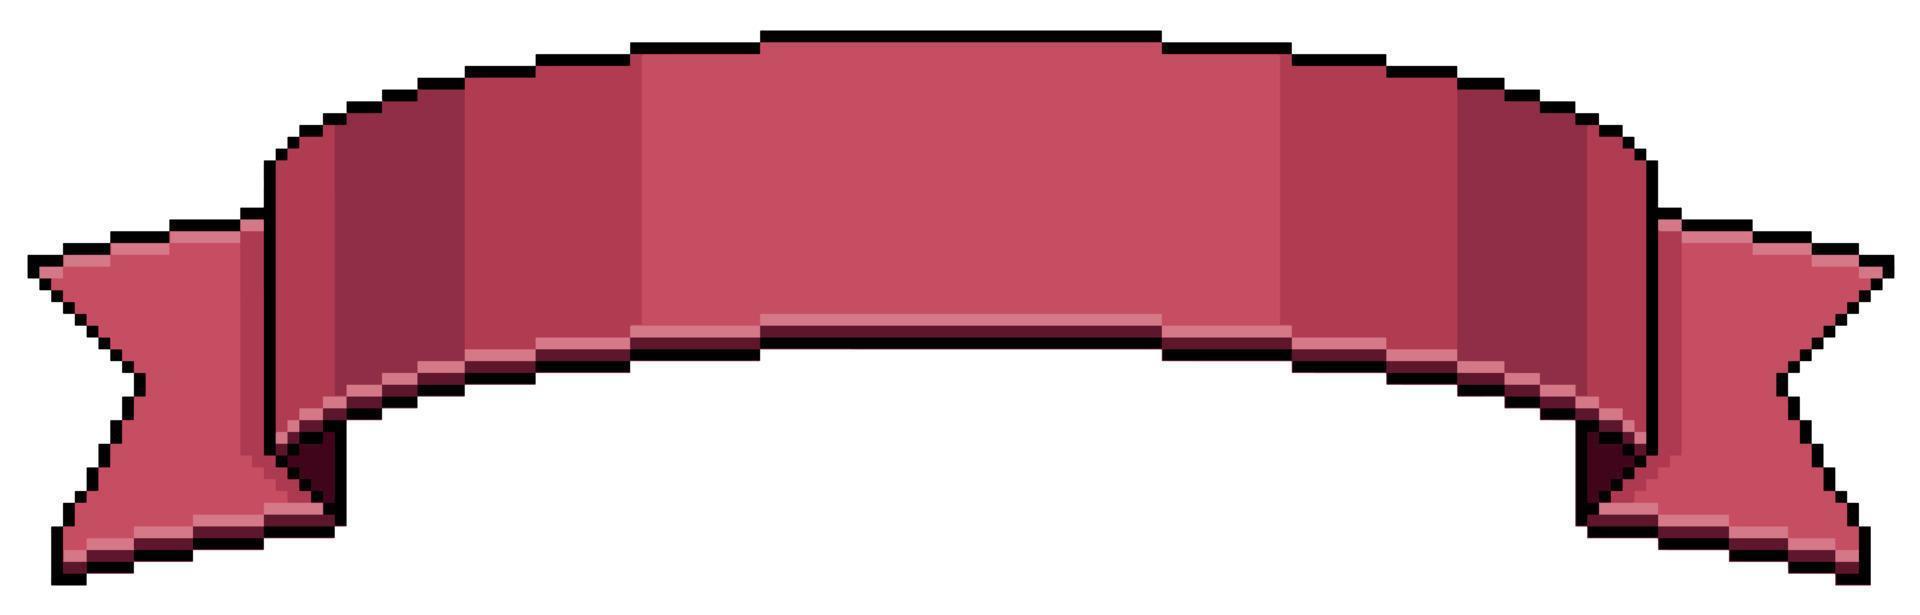 fita vermelha de pixel art. ícone de vetor de banda curva de faixa vermelha para jogo de 8 bits em fundo branco